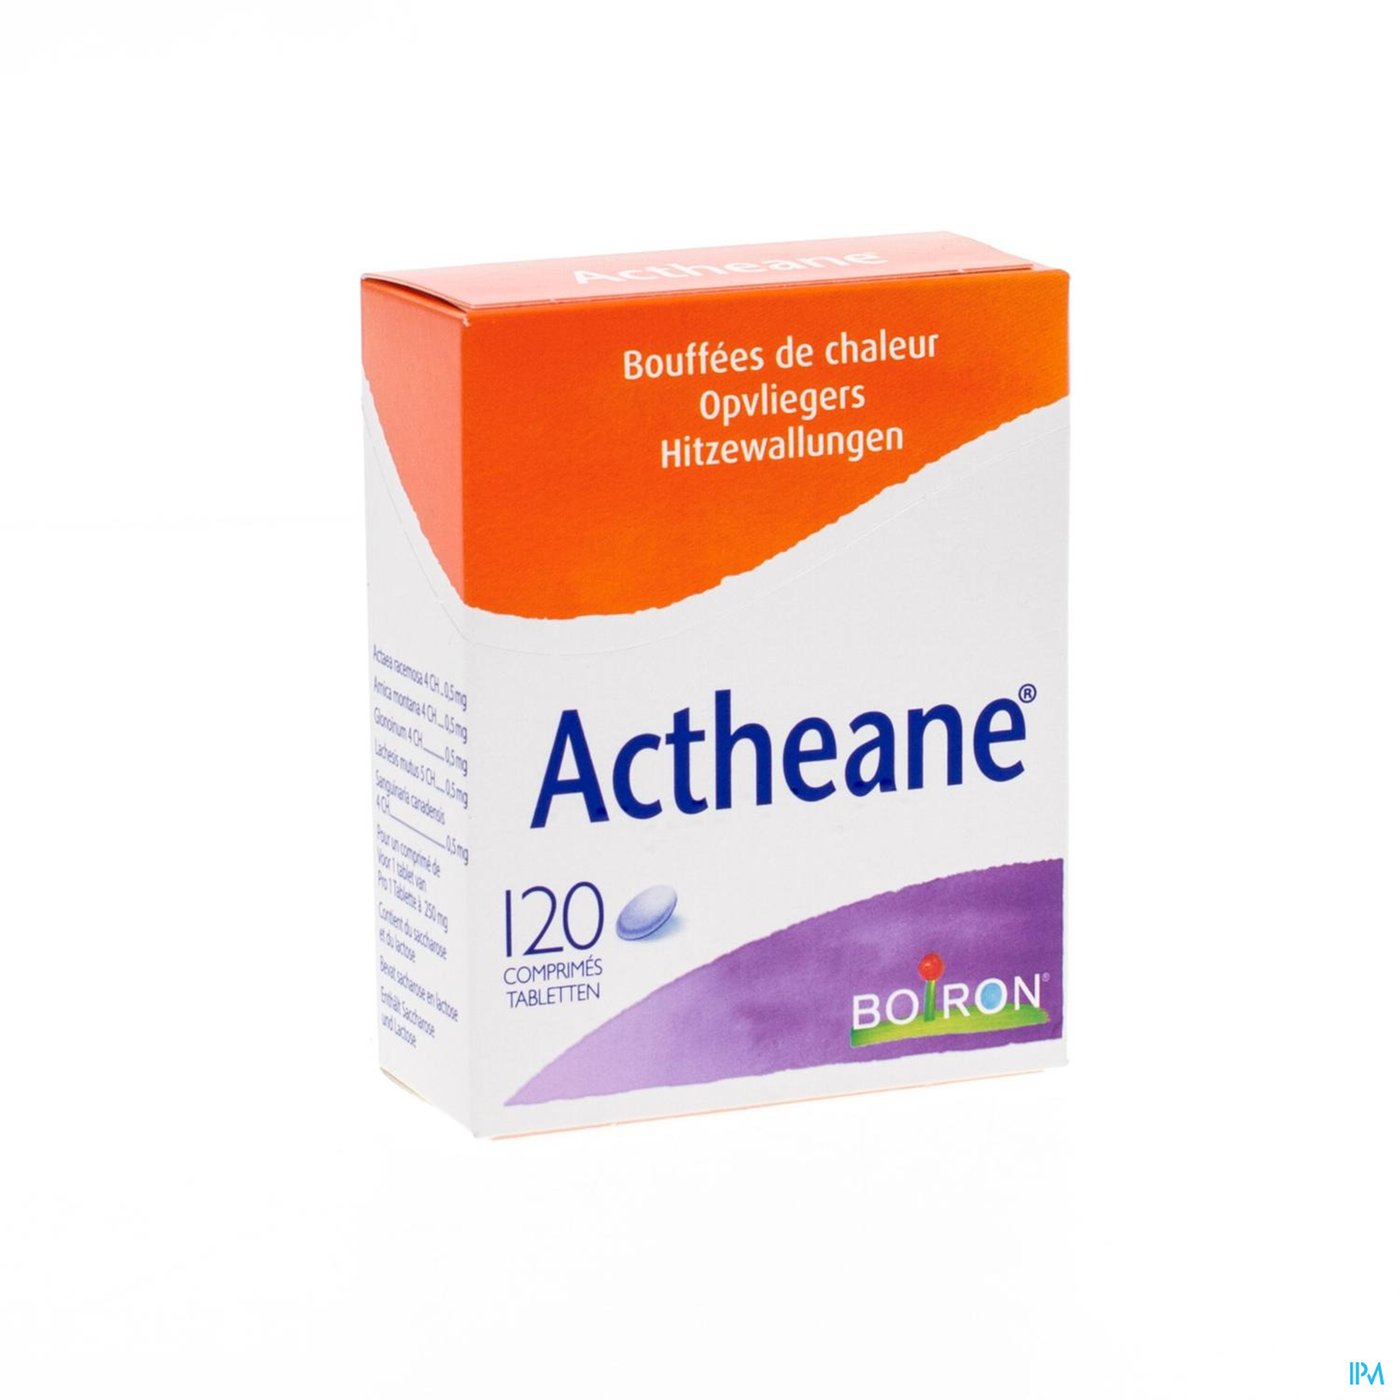 Actheane 250mg Comp 120 Boiron packshot